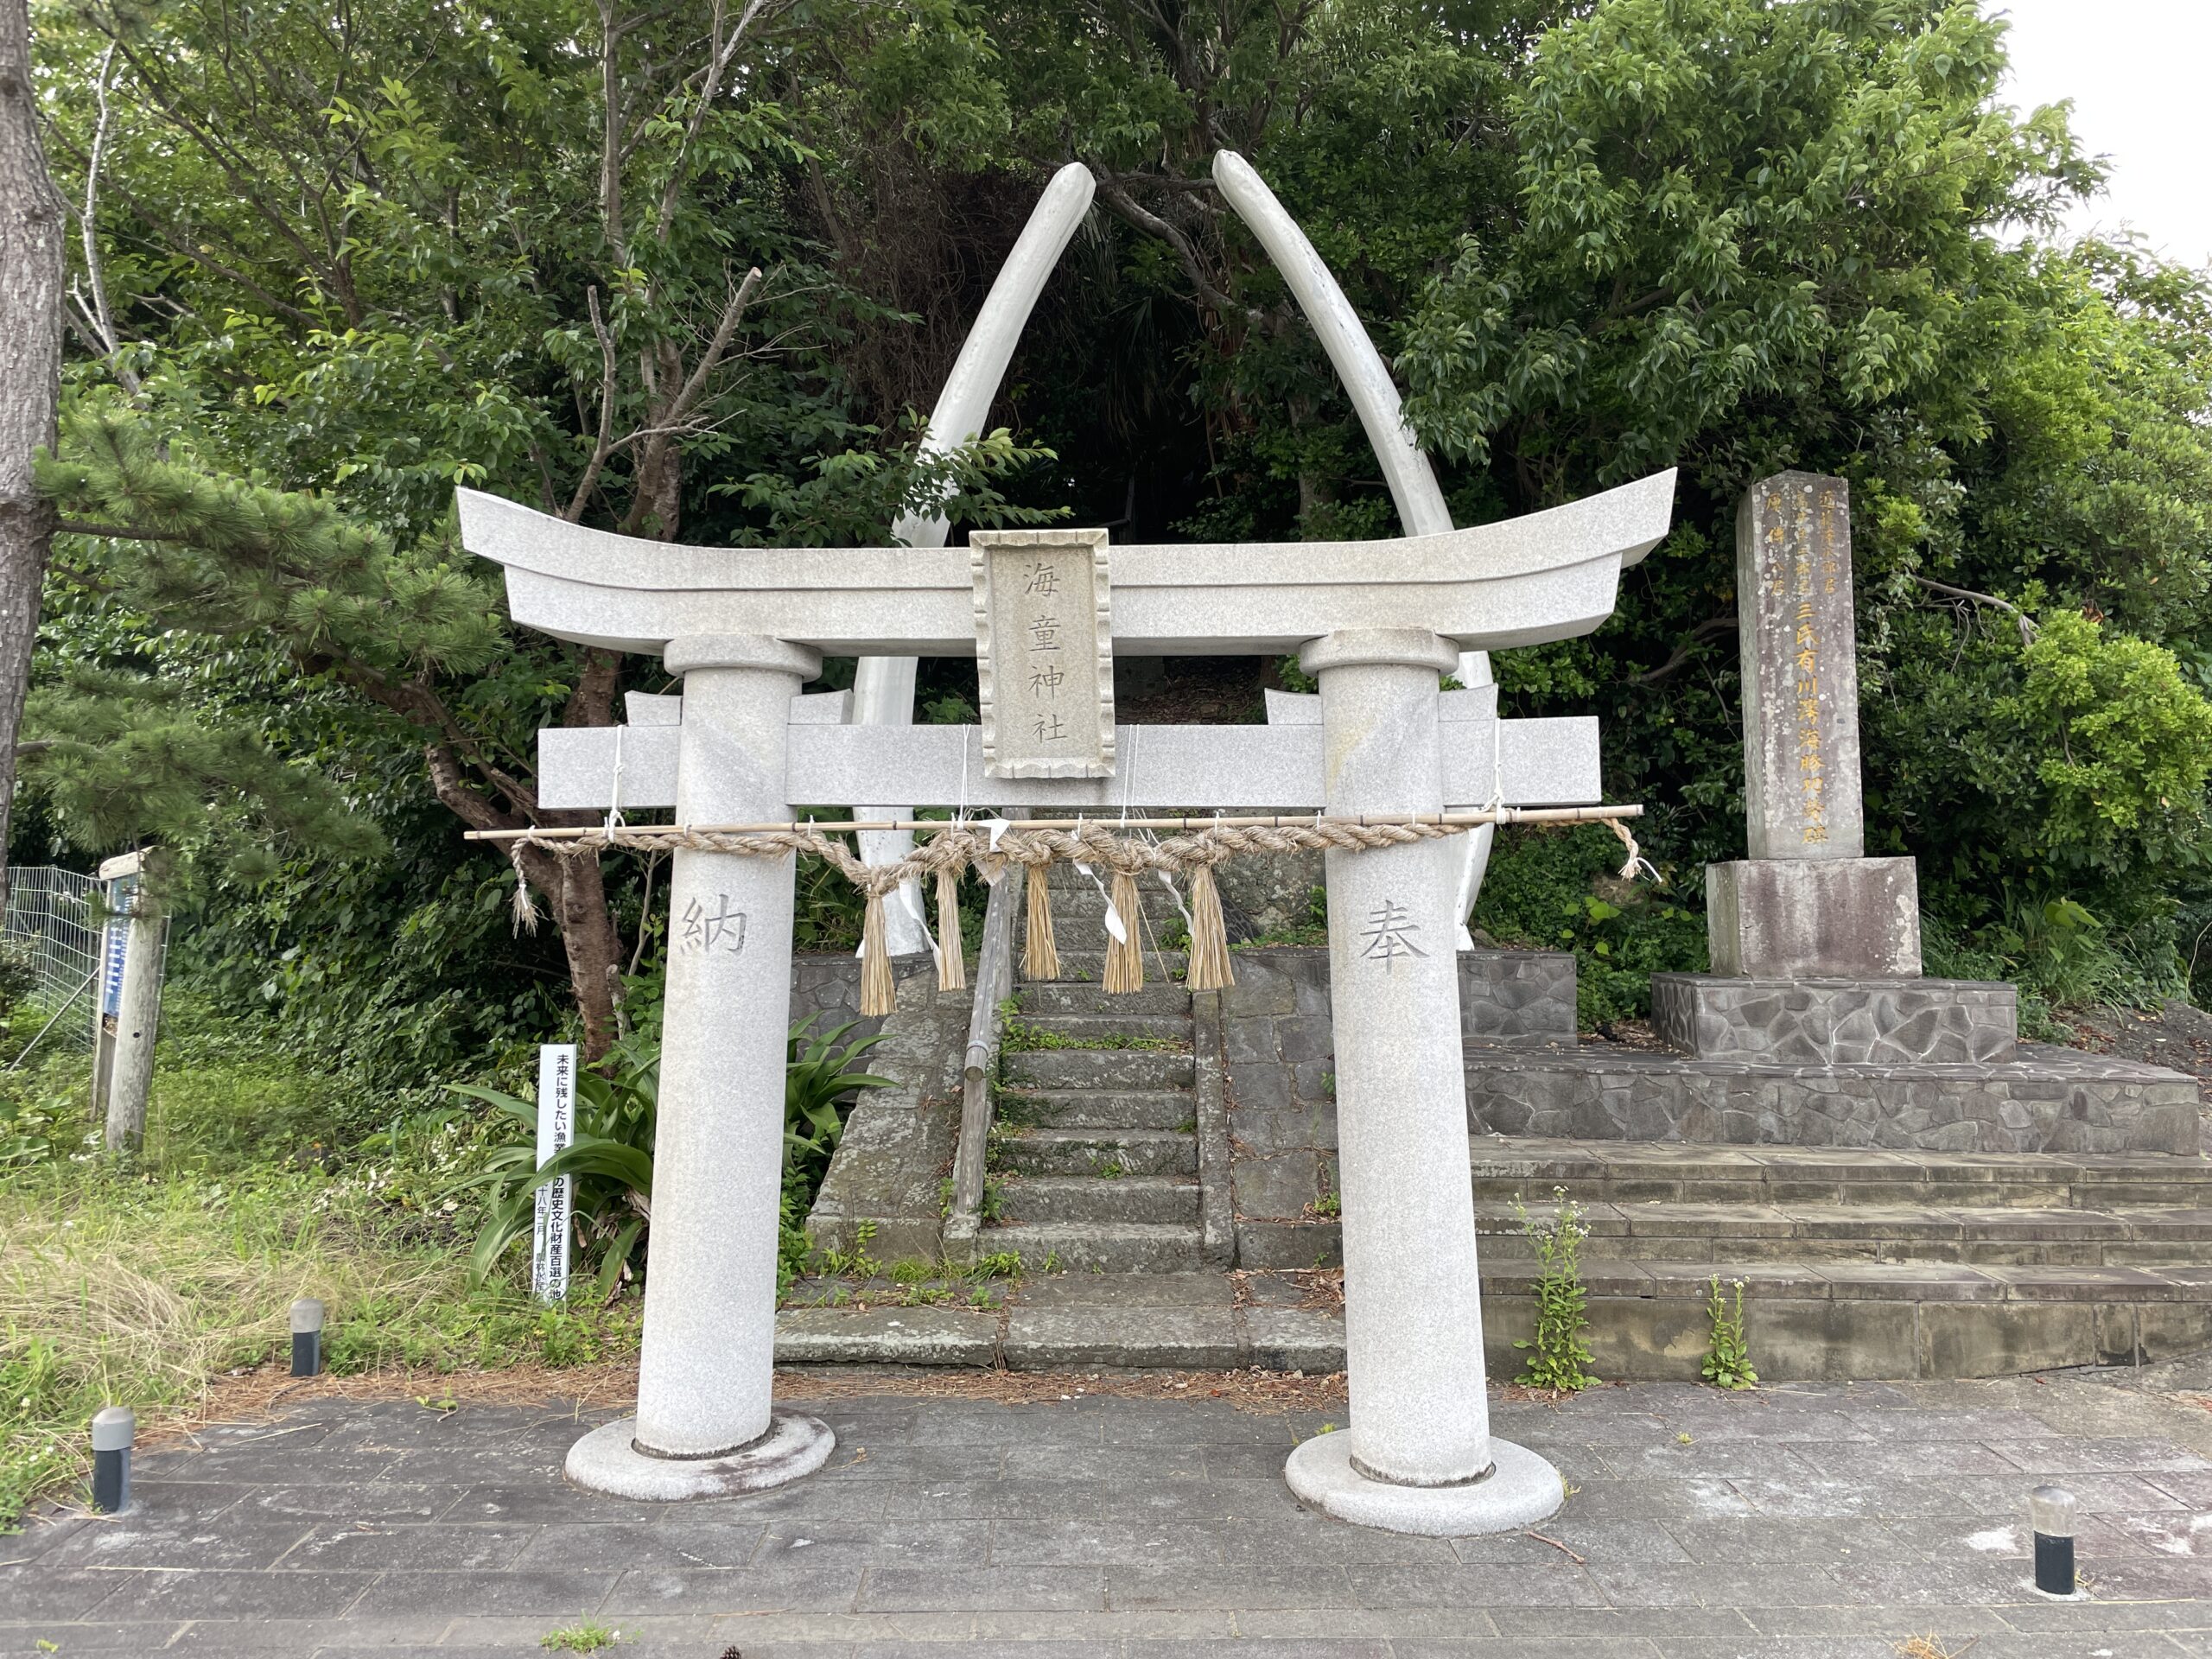 Die Kieferknochen eines Wales am Kaidō-Schrein in Arikawa zeugen von der Walfängergeschichte der Gotō-Inseln 